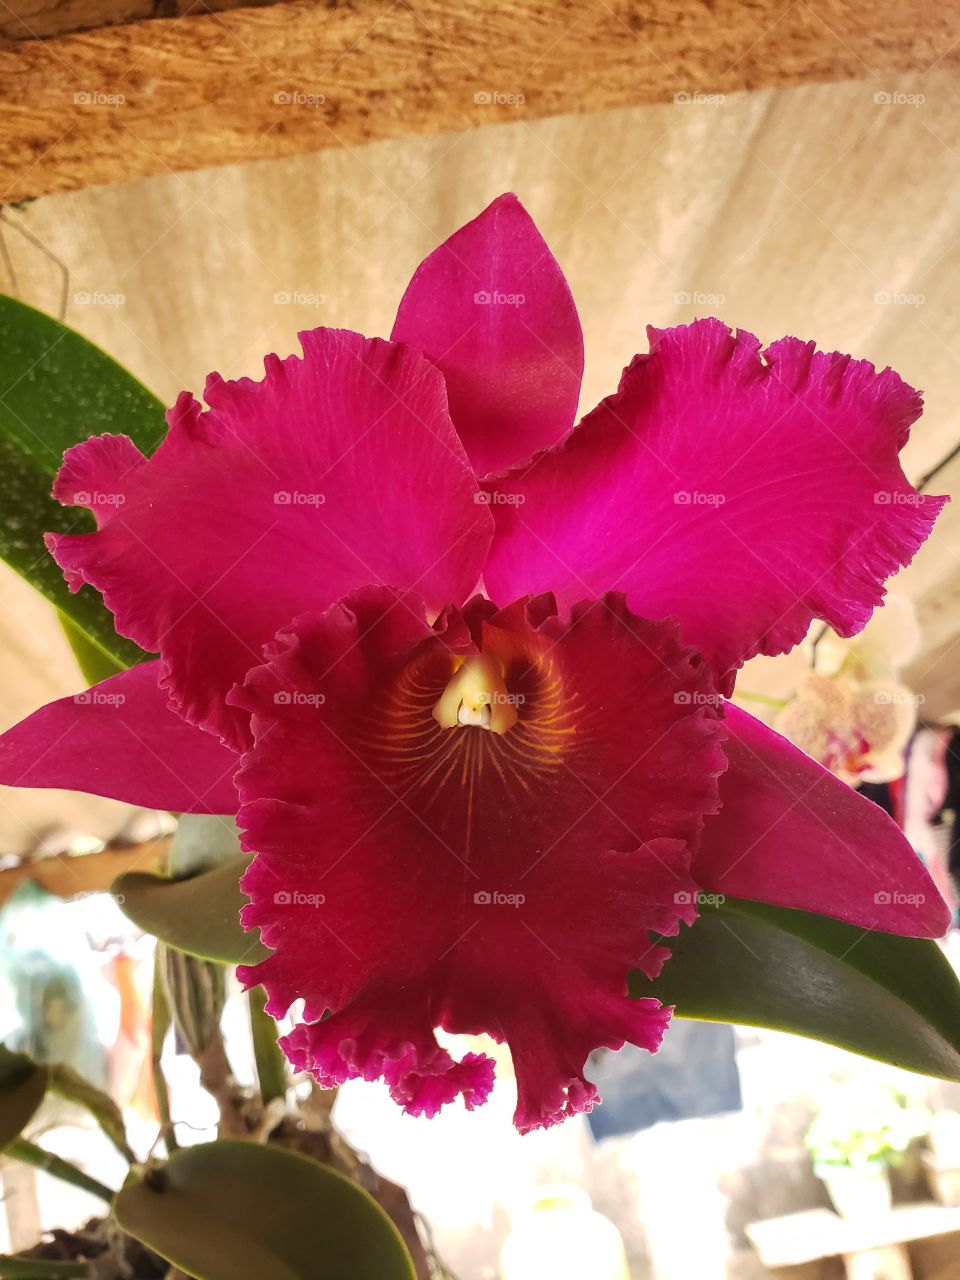 Orquídea vermelha, uma das mais belas flores do mundo, de cor intensa e perfume atraente além de chamar a atenção de qualquer um onde ela se encontra.